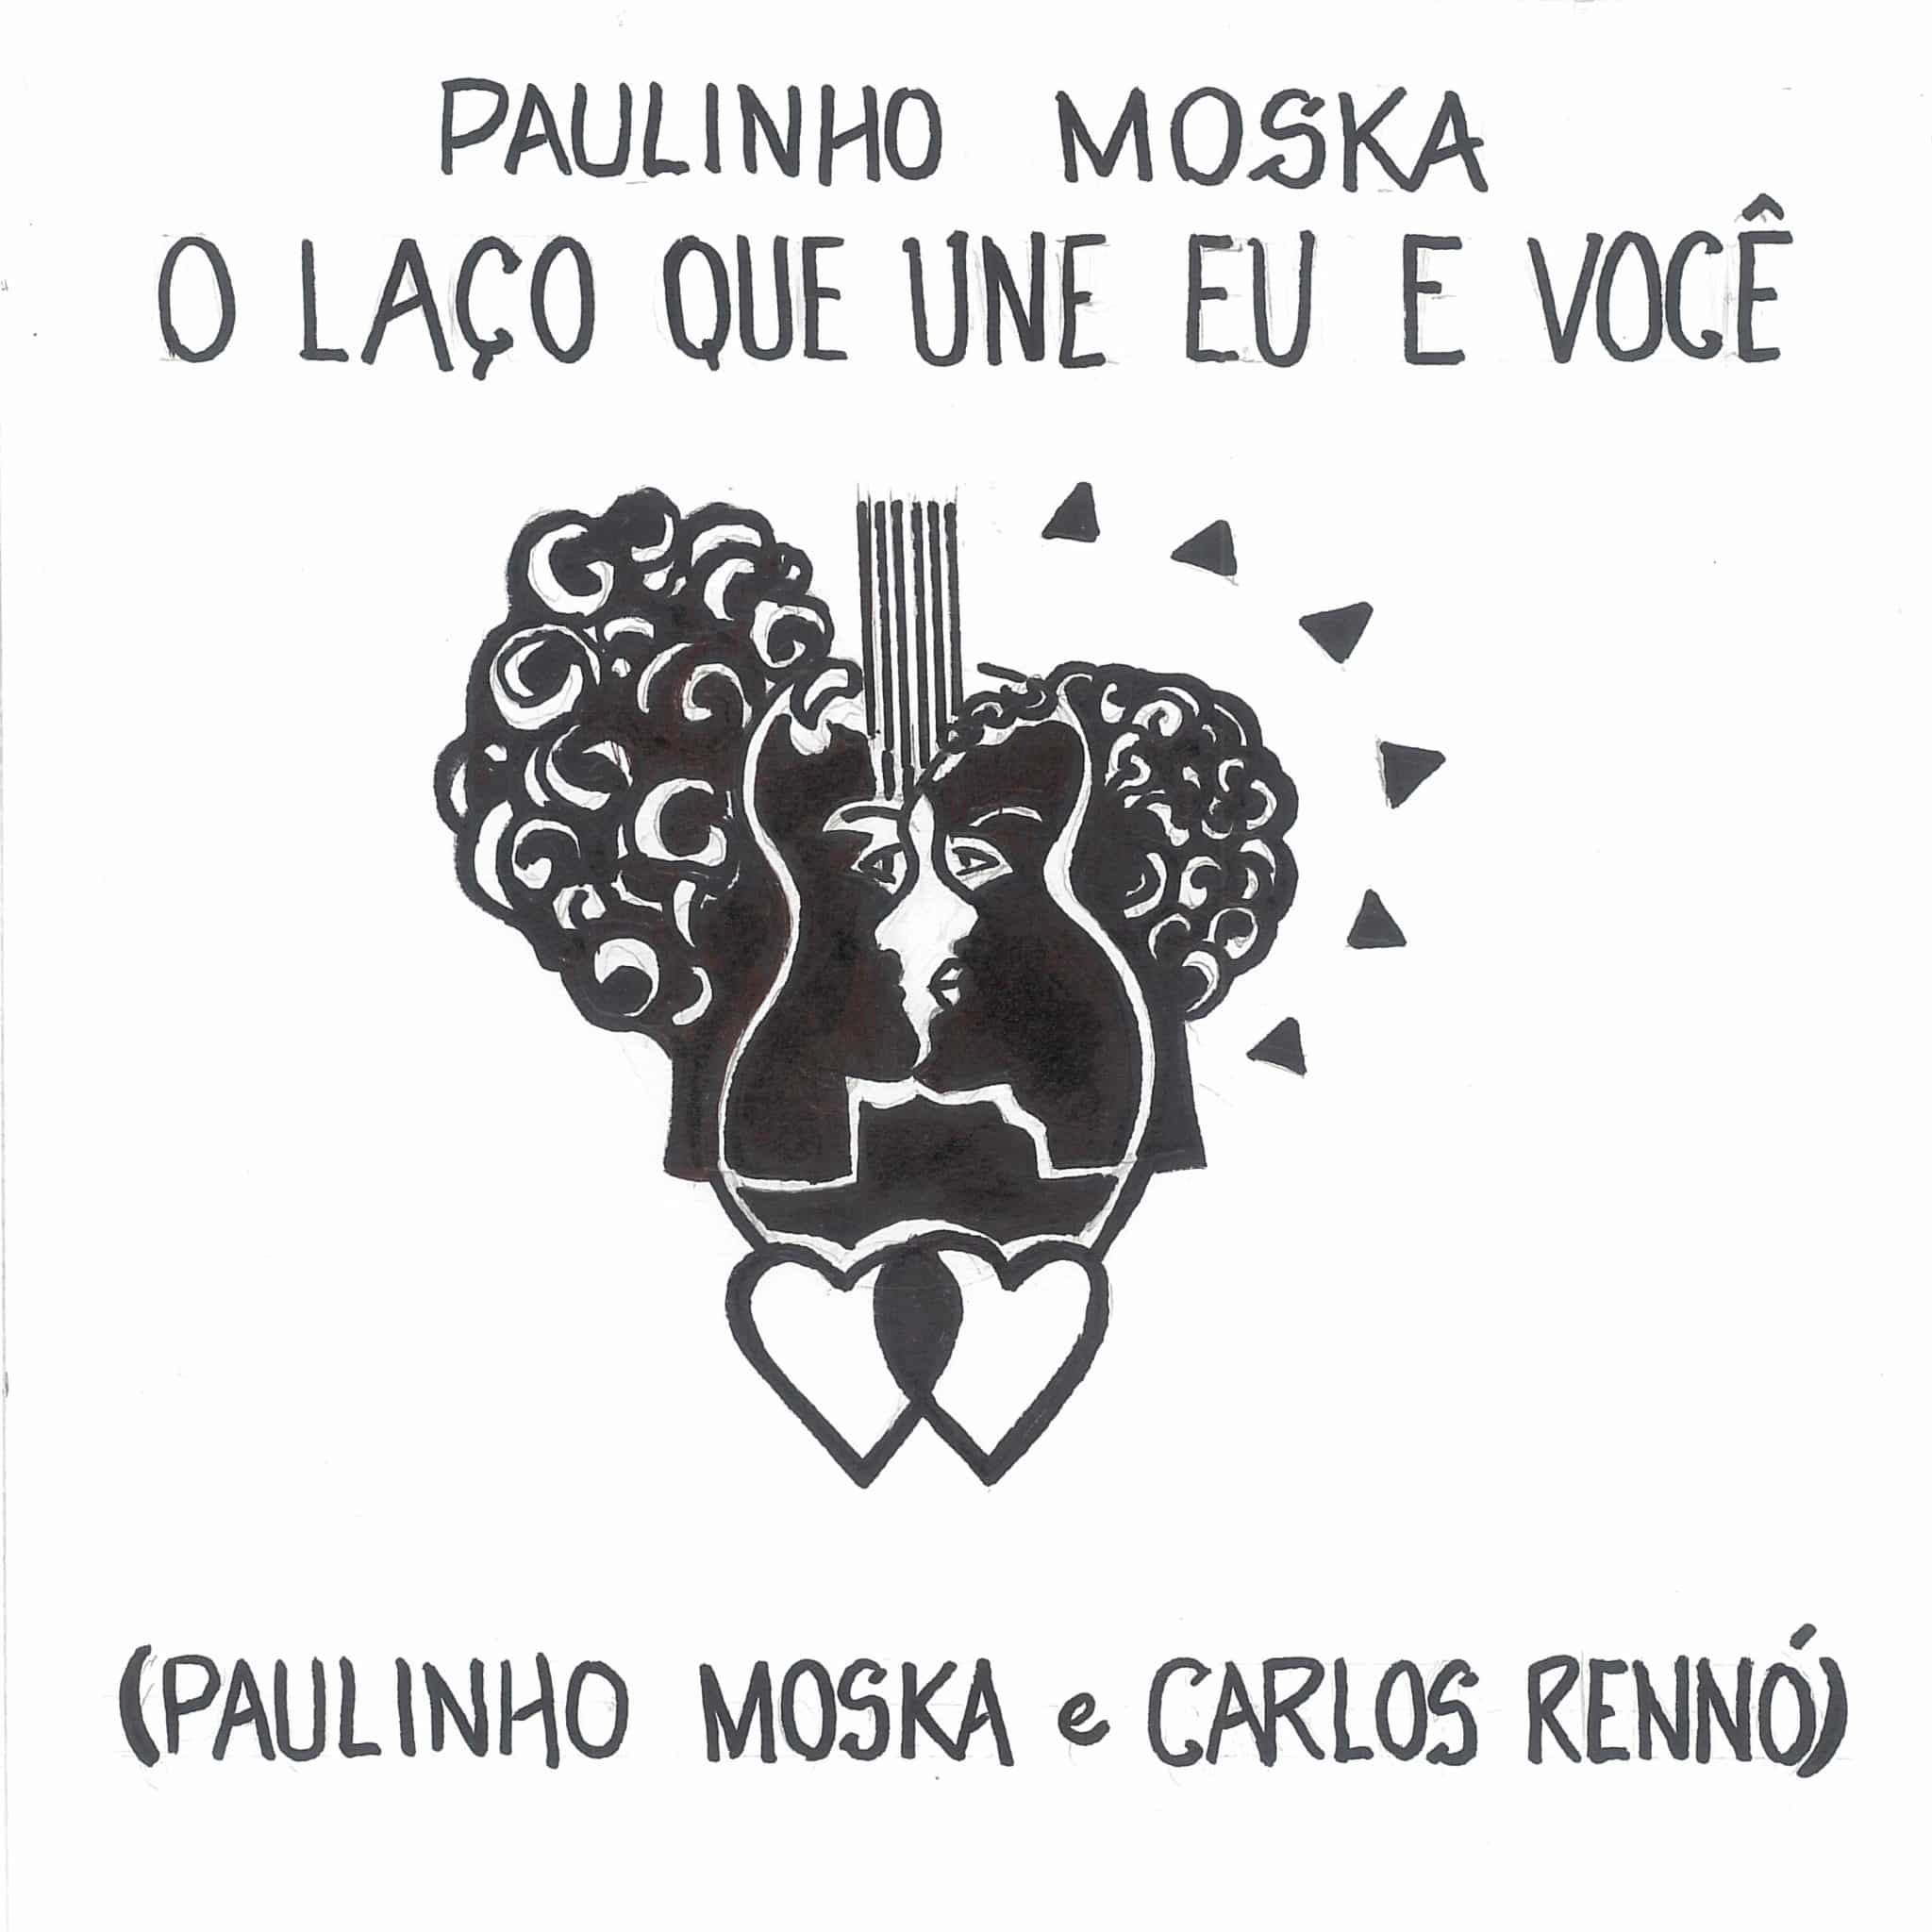 revistaprosaversoearte.com - Parceria de Carlos Rennó e Paulinho Moska, o single “O laço que une eu e você” chega às plataformas